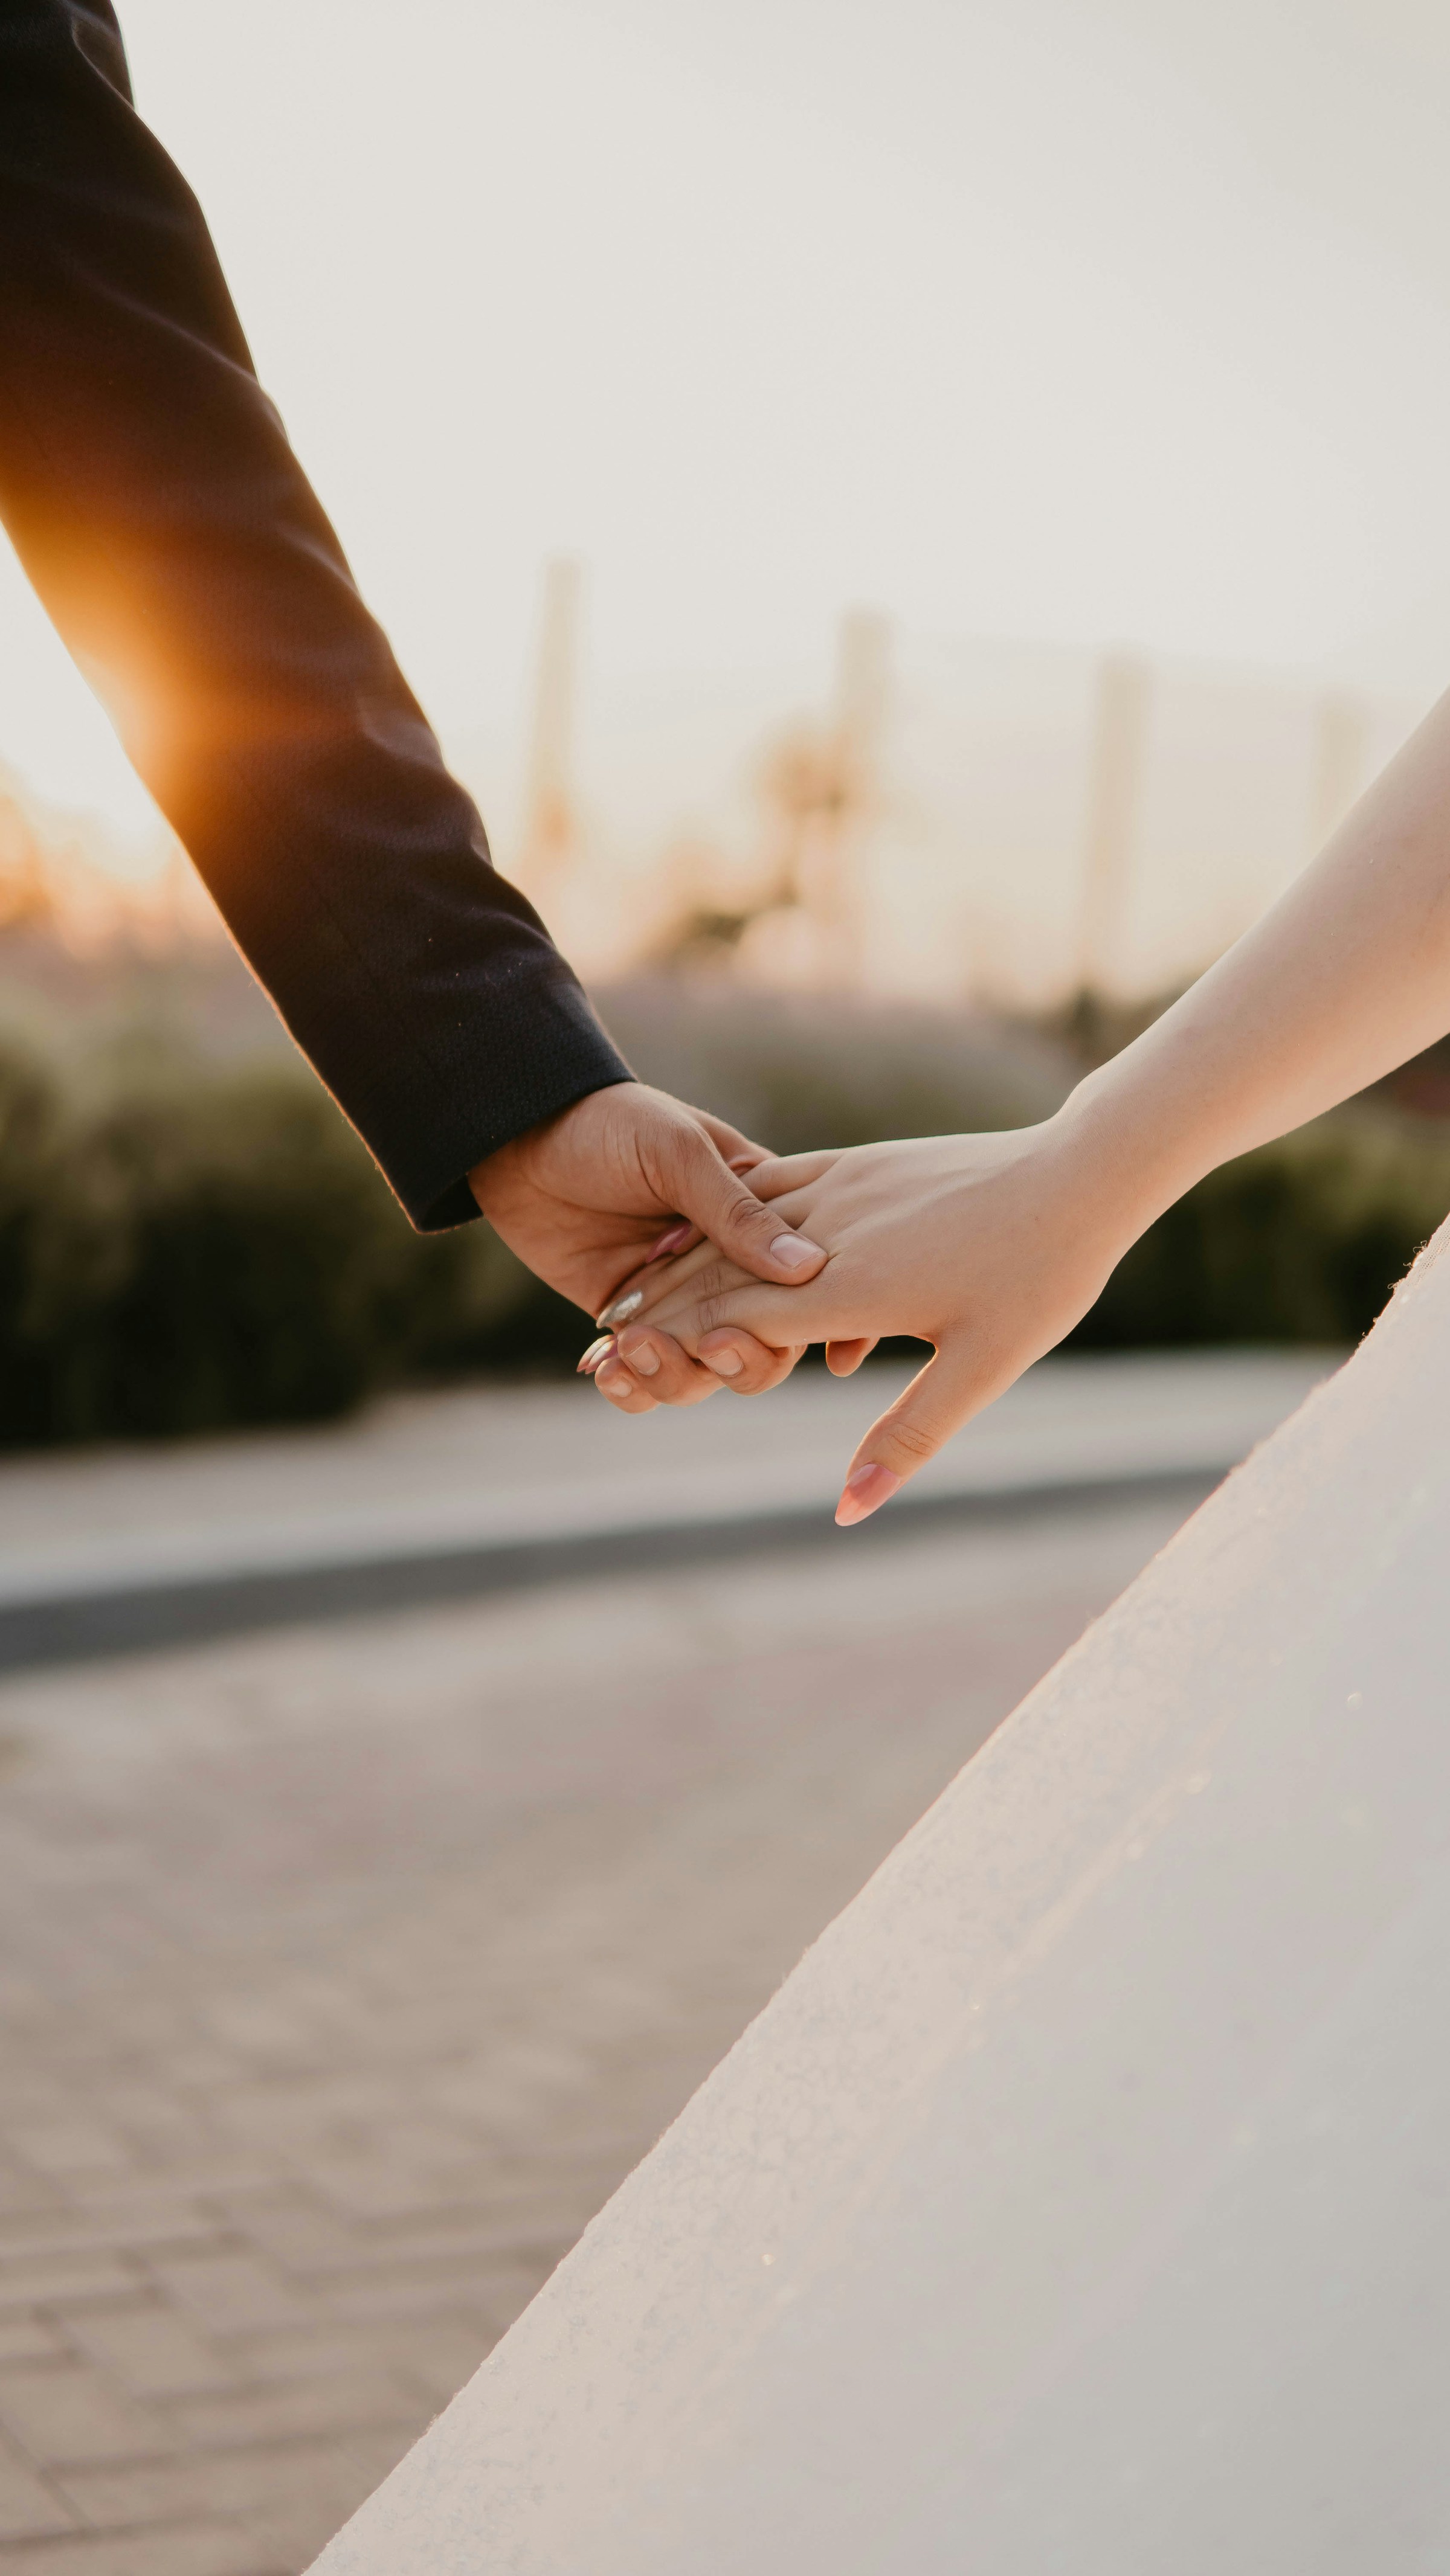 Une mariée et un marié se tenant par la main | Source : Unsplash